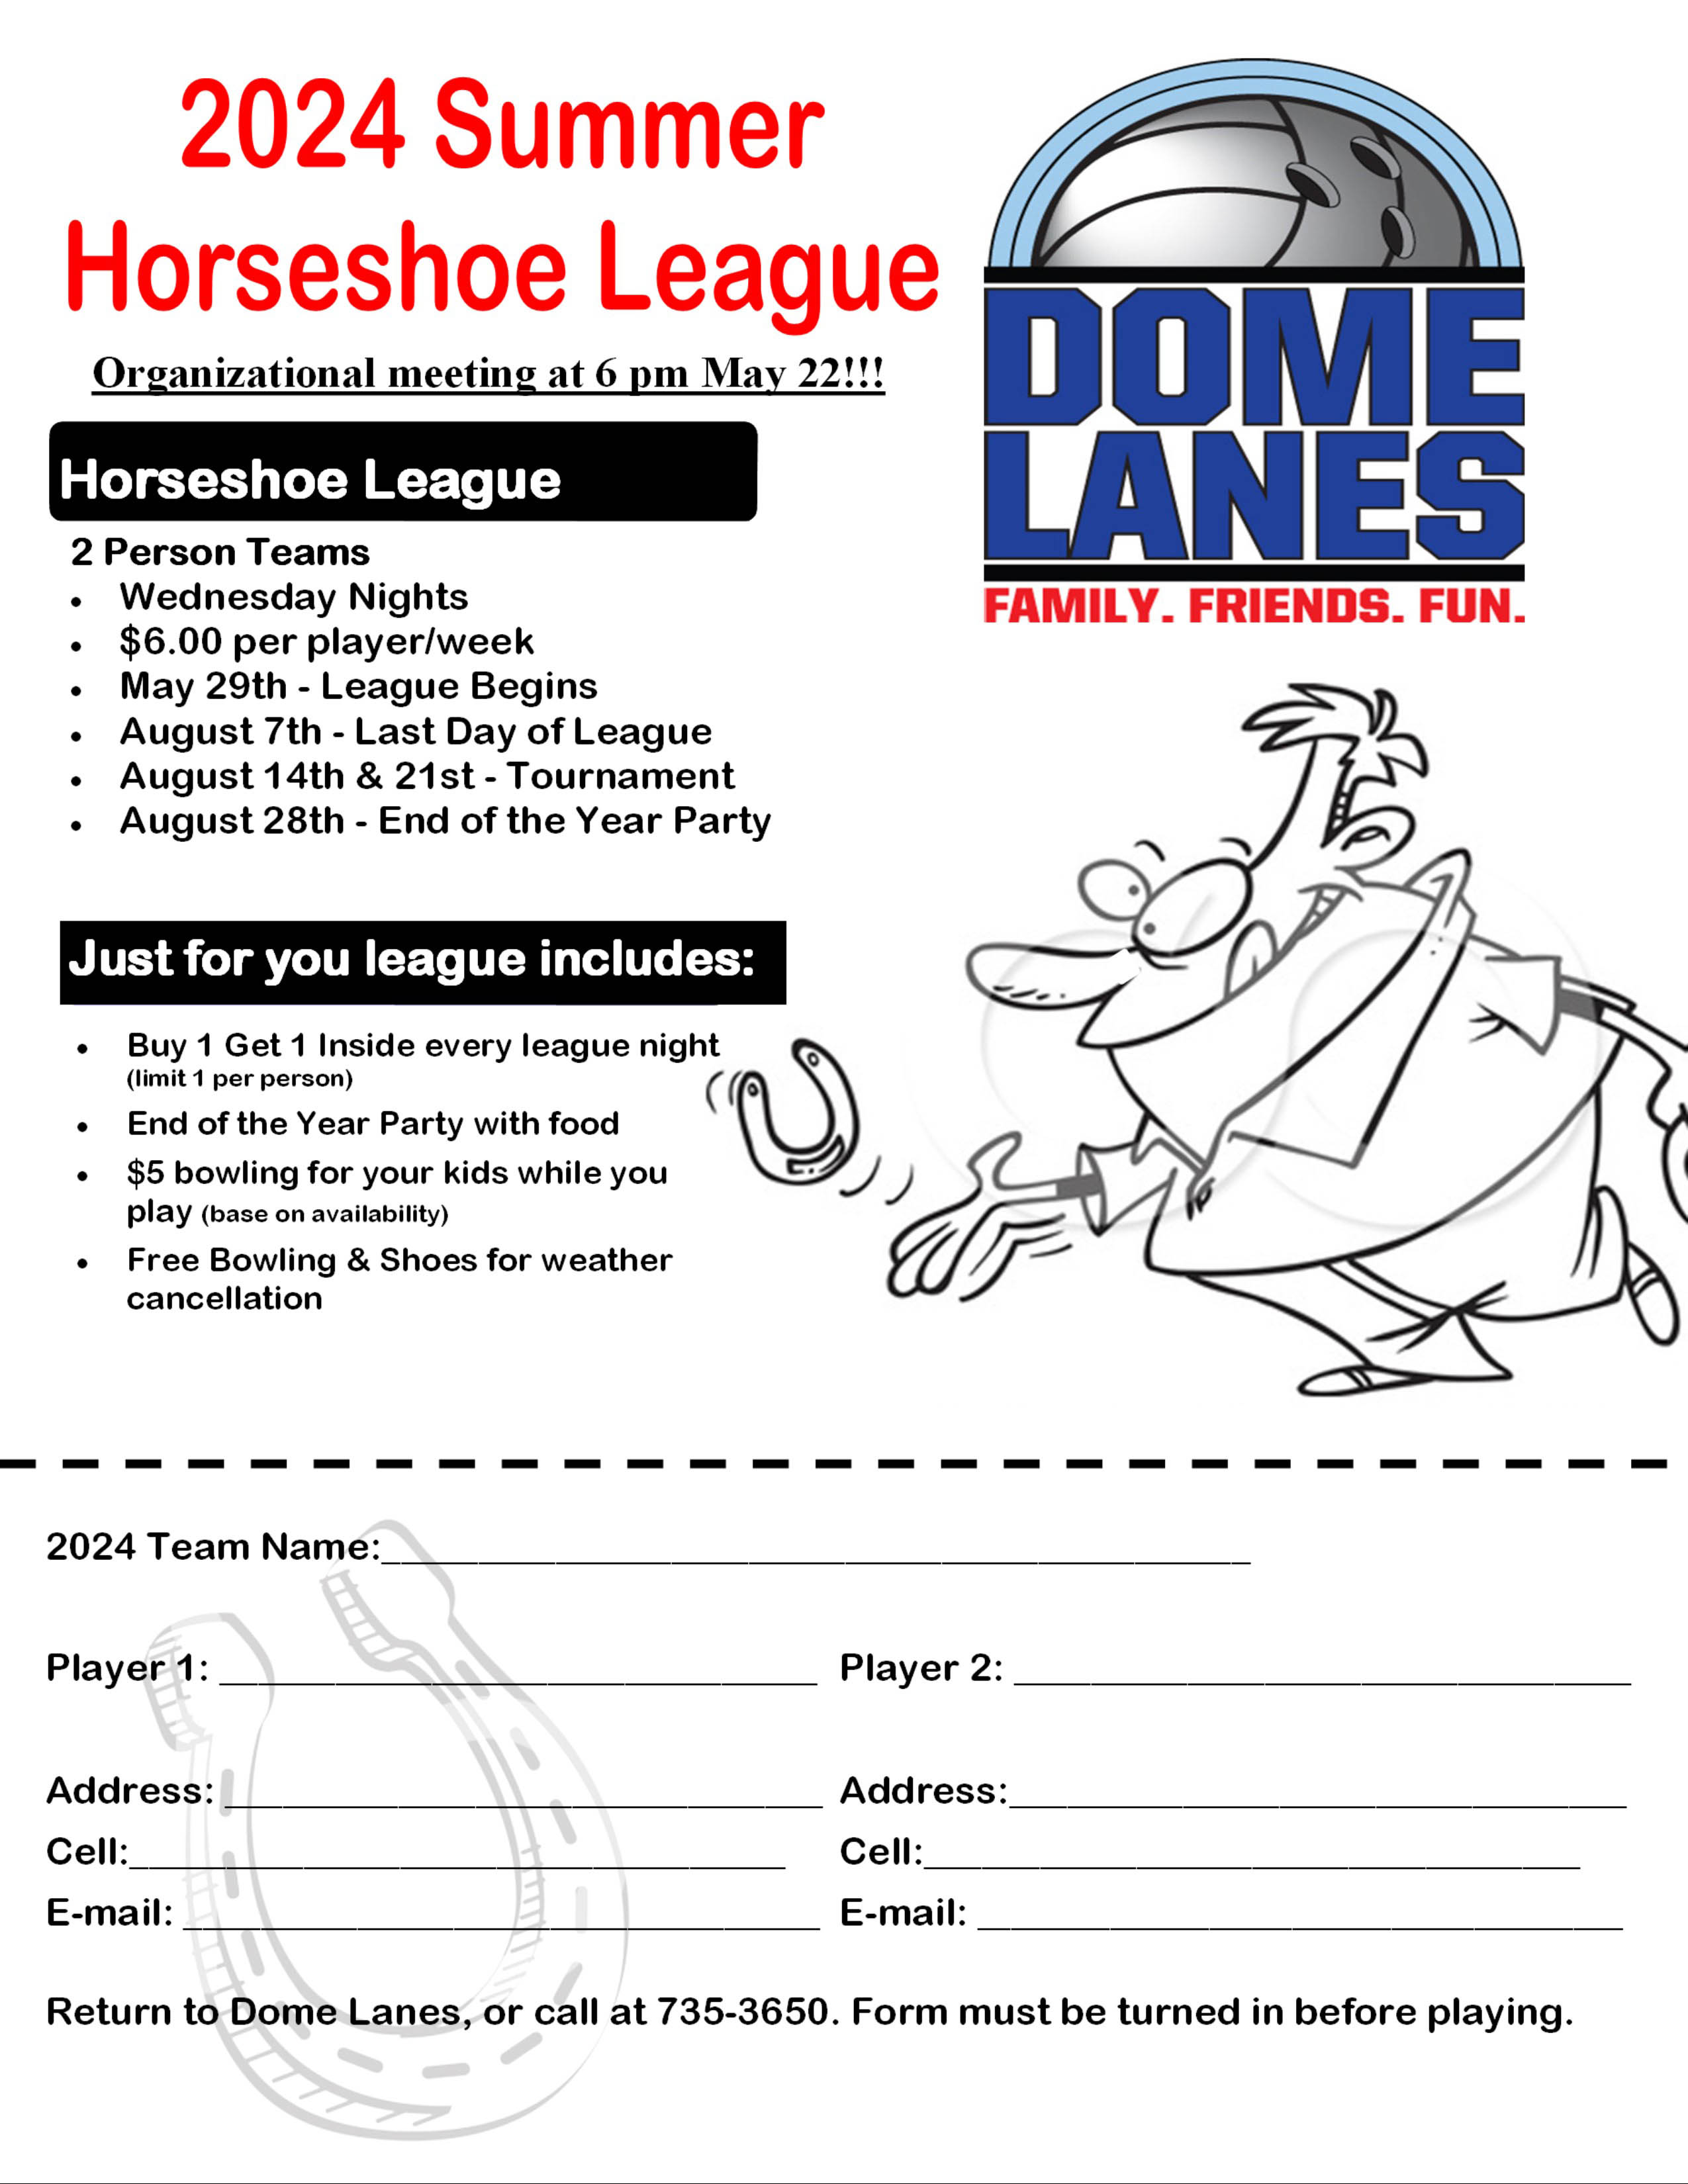 Horseshoe league flyer 2024